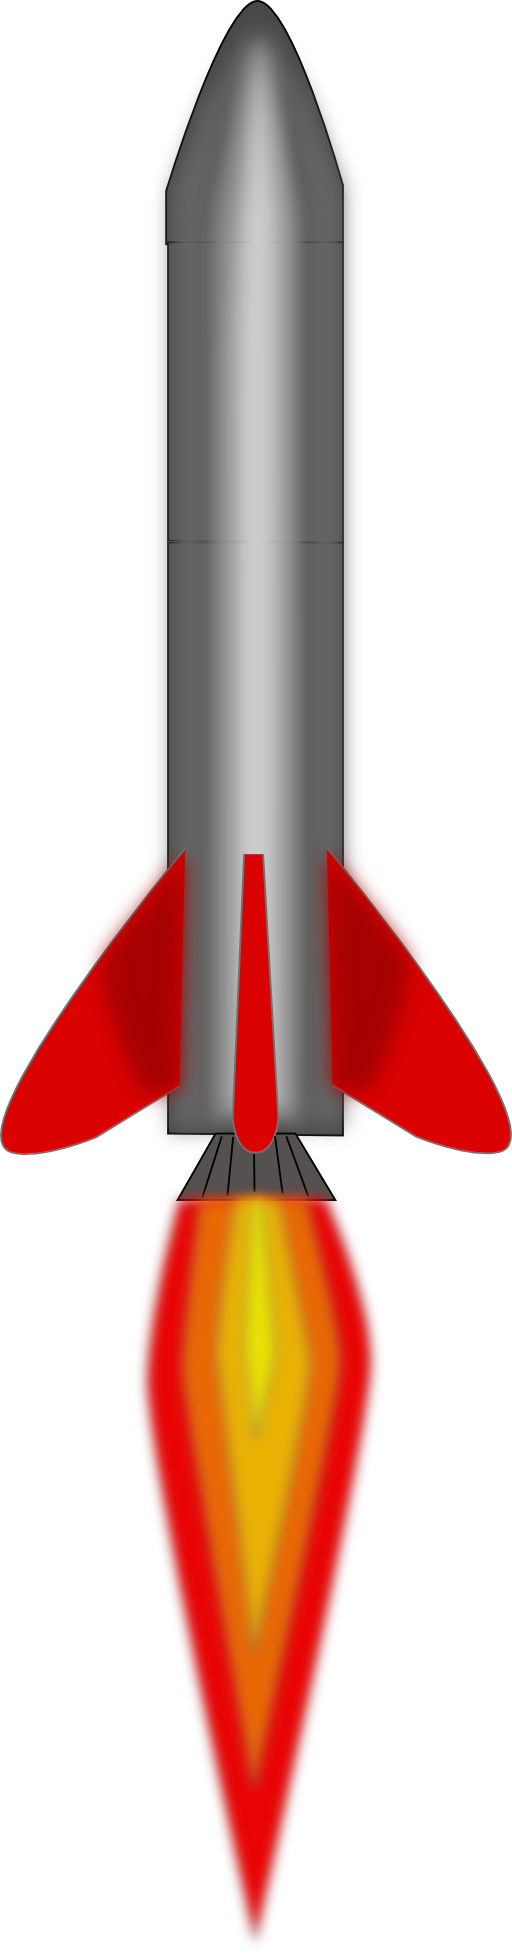 Images For > Rocket Clip Art Png